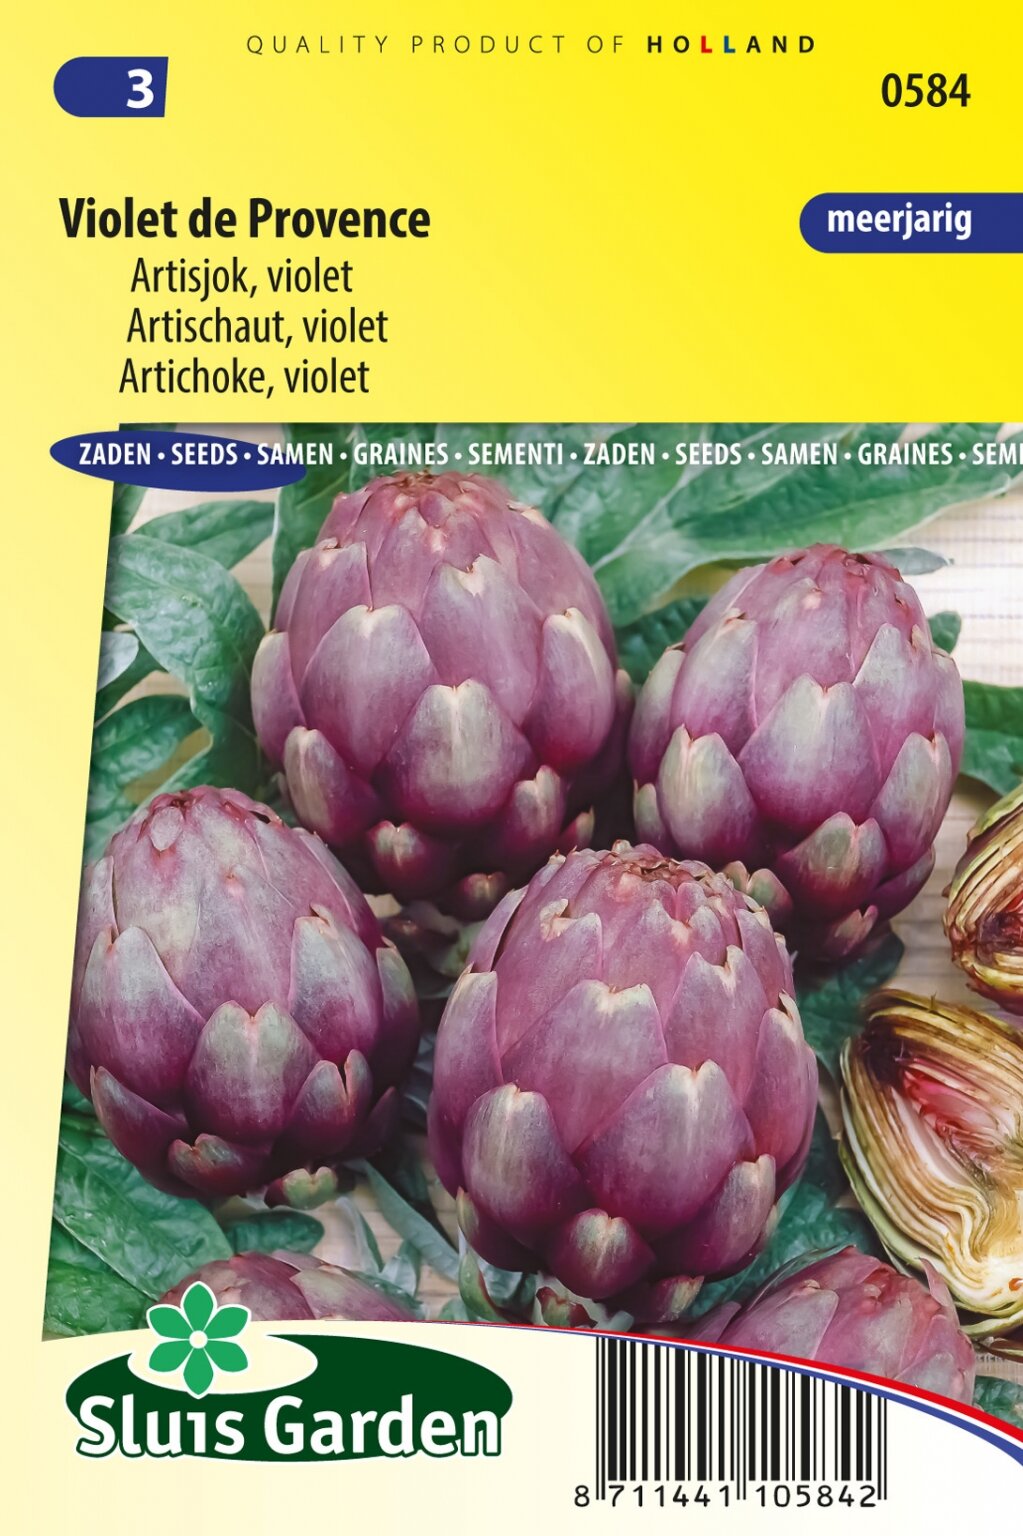 Donker worden Voorlopige naam Toepassen Sluis Garden Artisjok Violet de Provence zaden kopen? - Tuingoedkoop.nl |  Het grootste online tuincentrum met zowel Tuinartikelen én Planten.